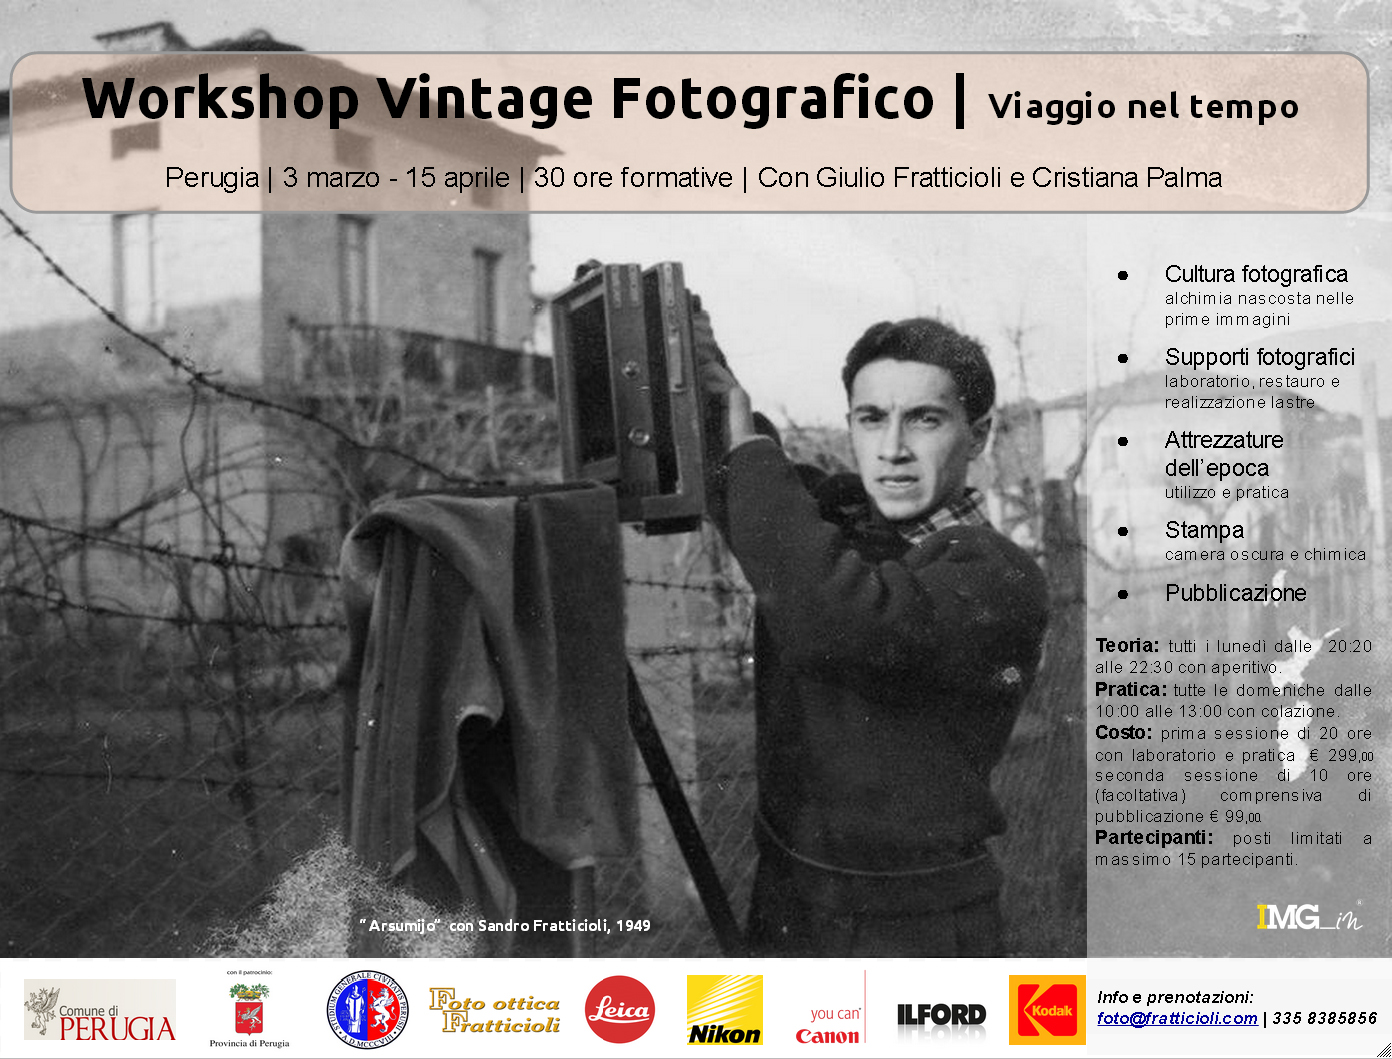 Workshop Fotografico Vintage - Viaggio nel tempo - Dalle origini della fotografia all'era digitale.